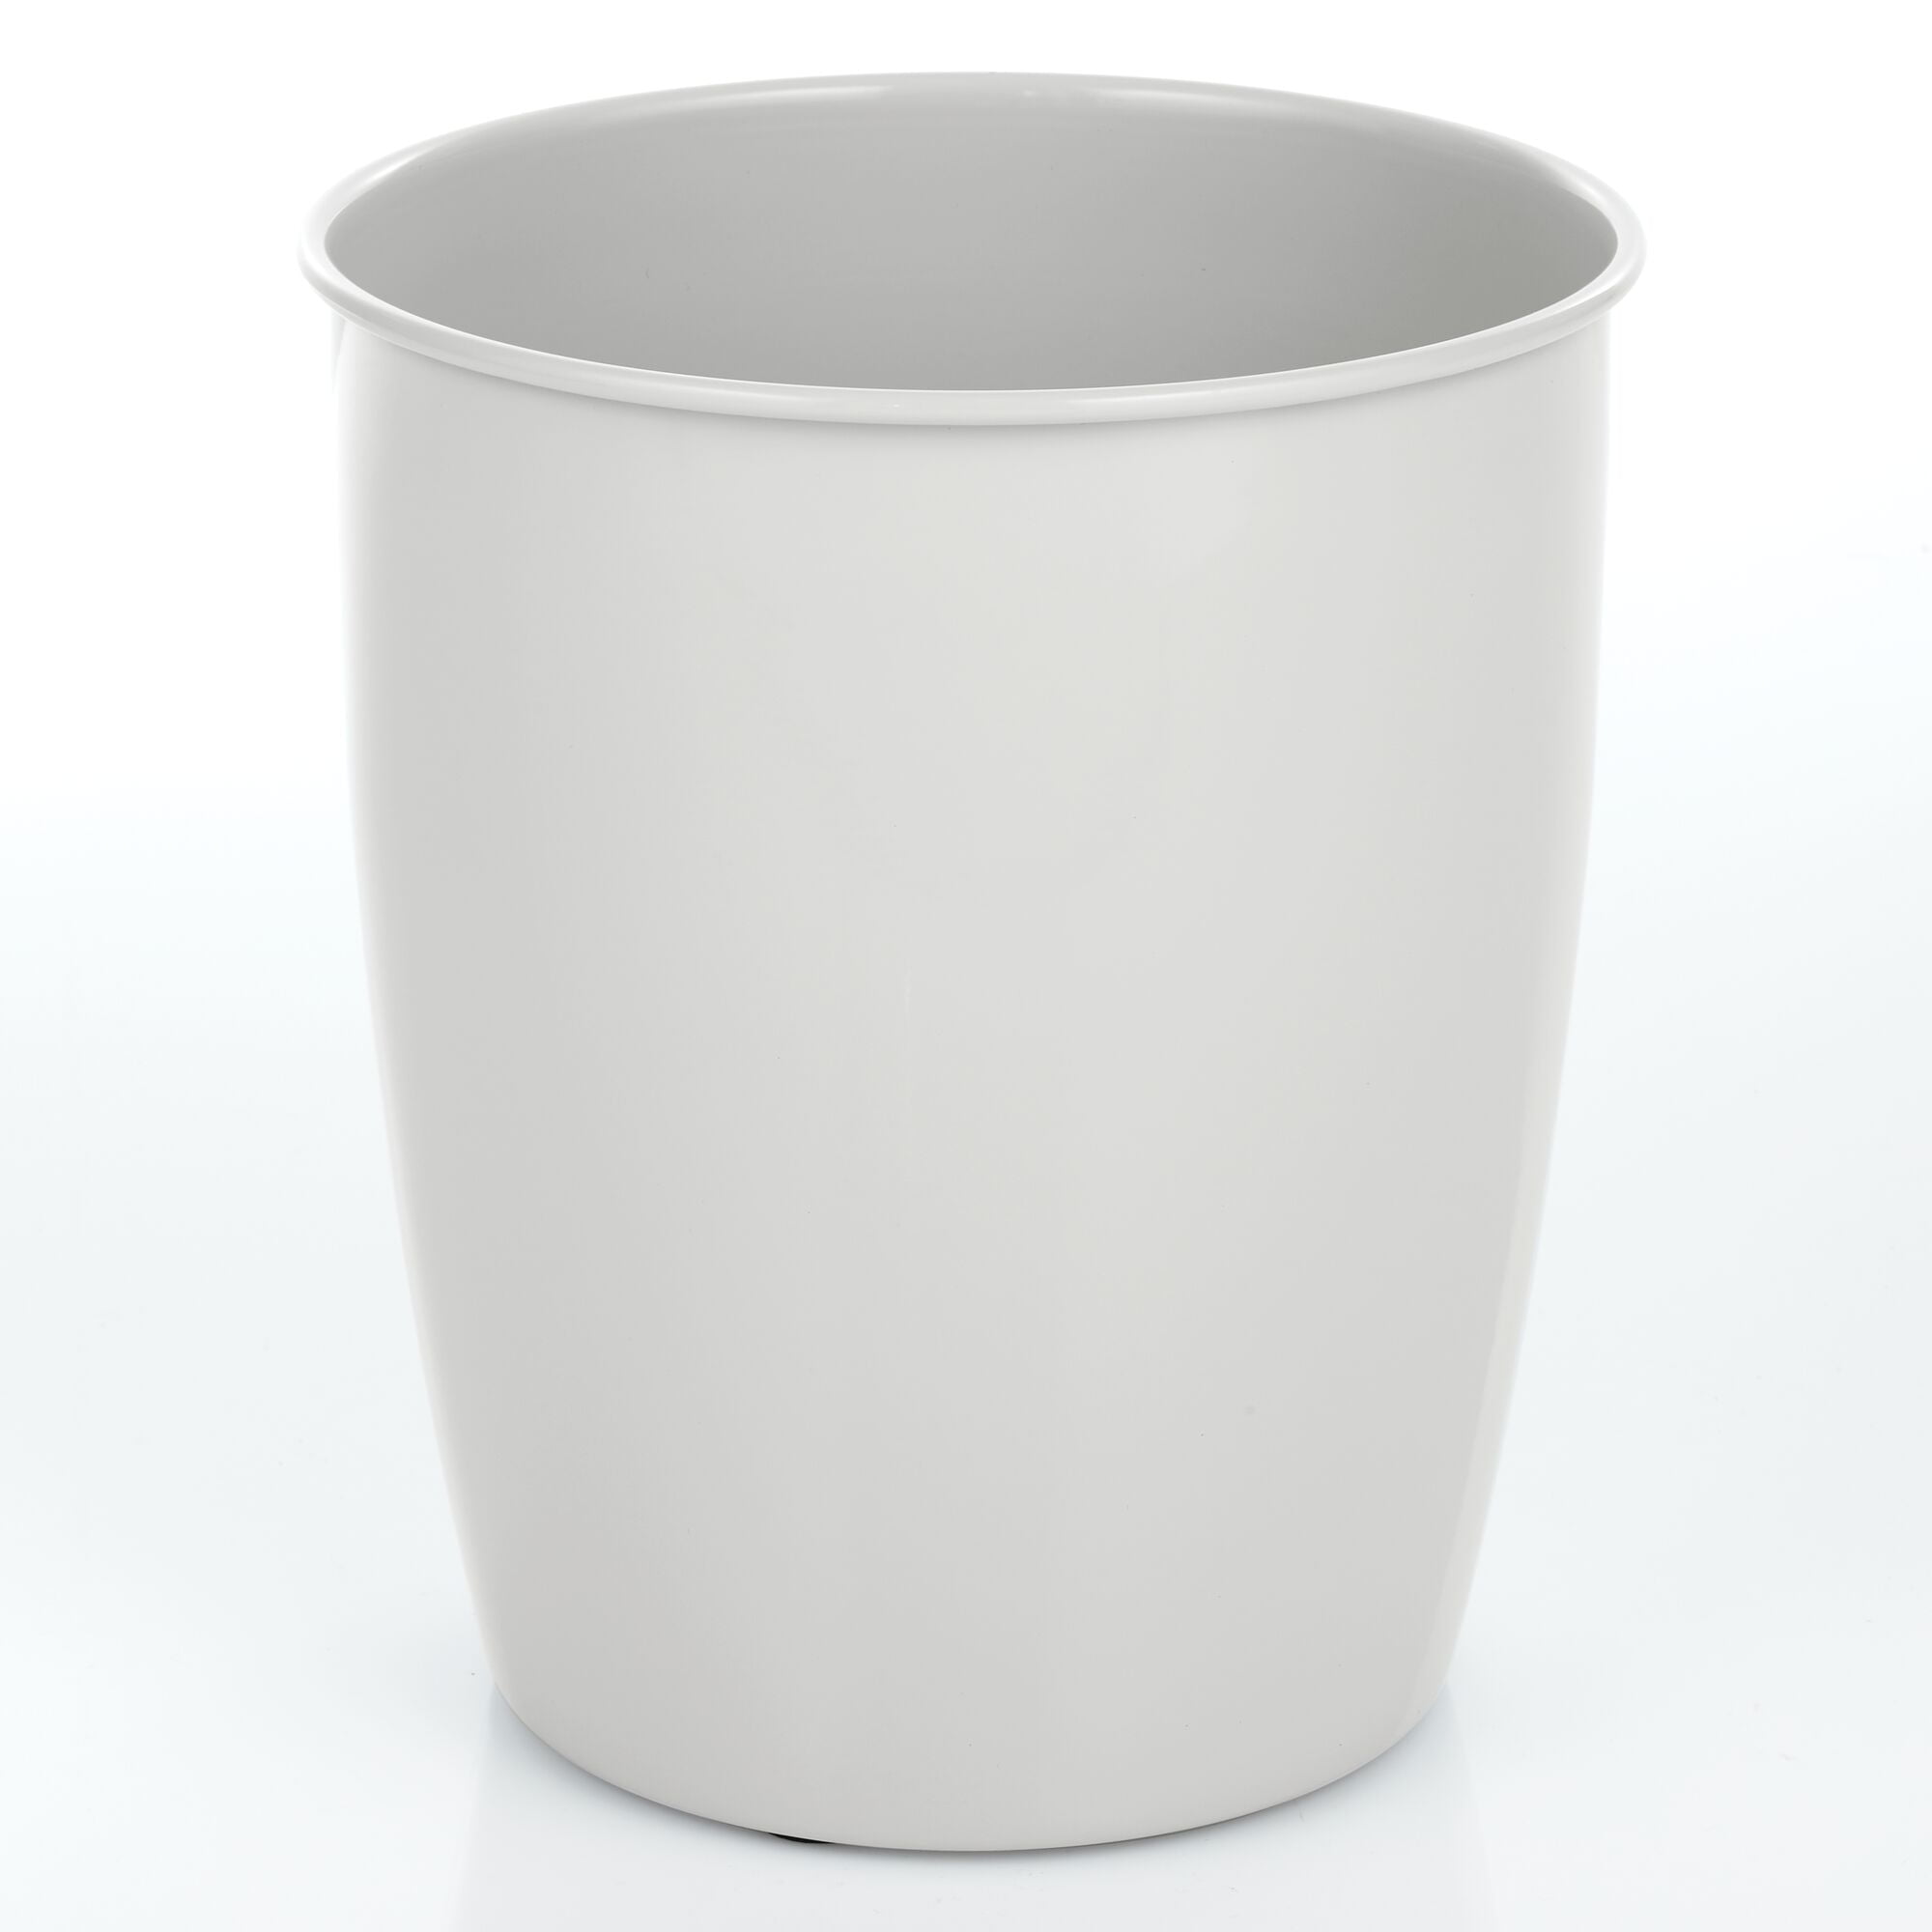 InterDesign 10" White Una Wastebasket 93071 for sale online 